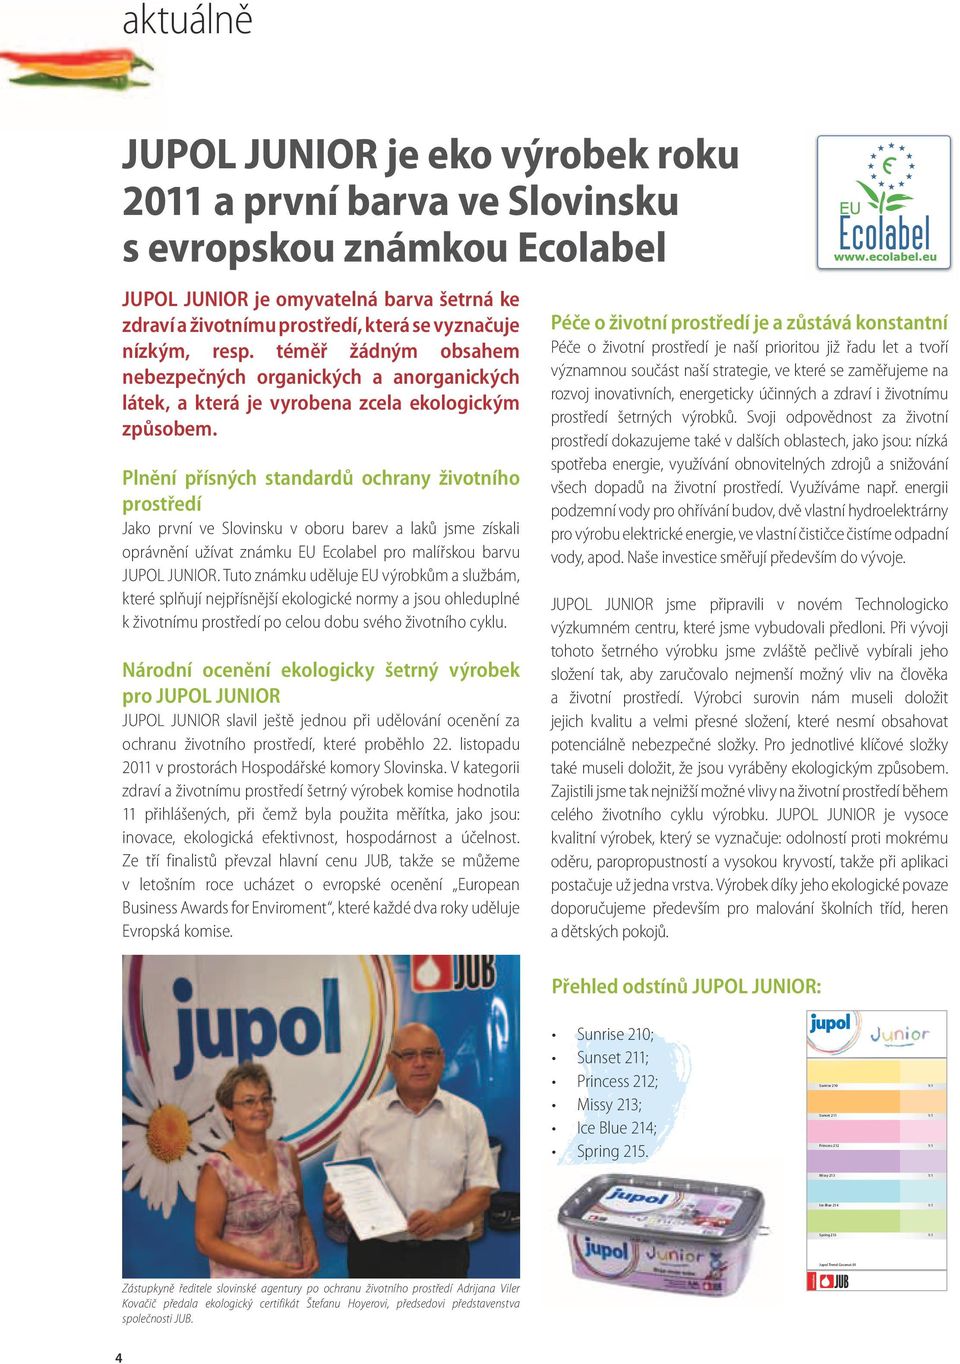 Plnění přísných standardů ochrany životního prostředí Jako první ve Slovinsku v oboru barev a laků jsme získali oprávnění užívat známku EU Ecolabel pro malířskou barvu JUPOL JUNIOR.